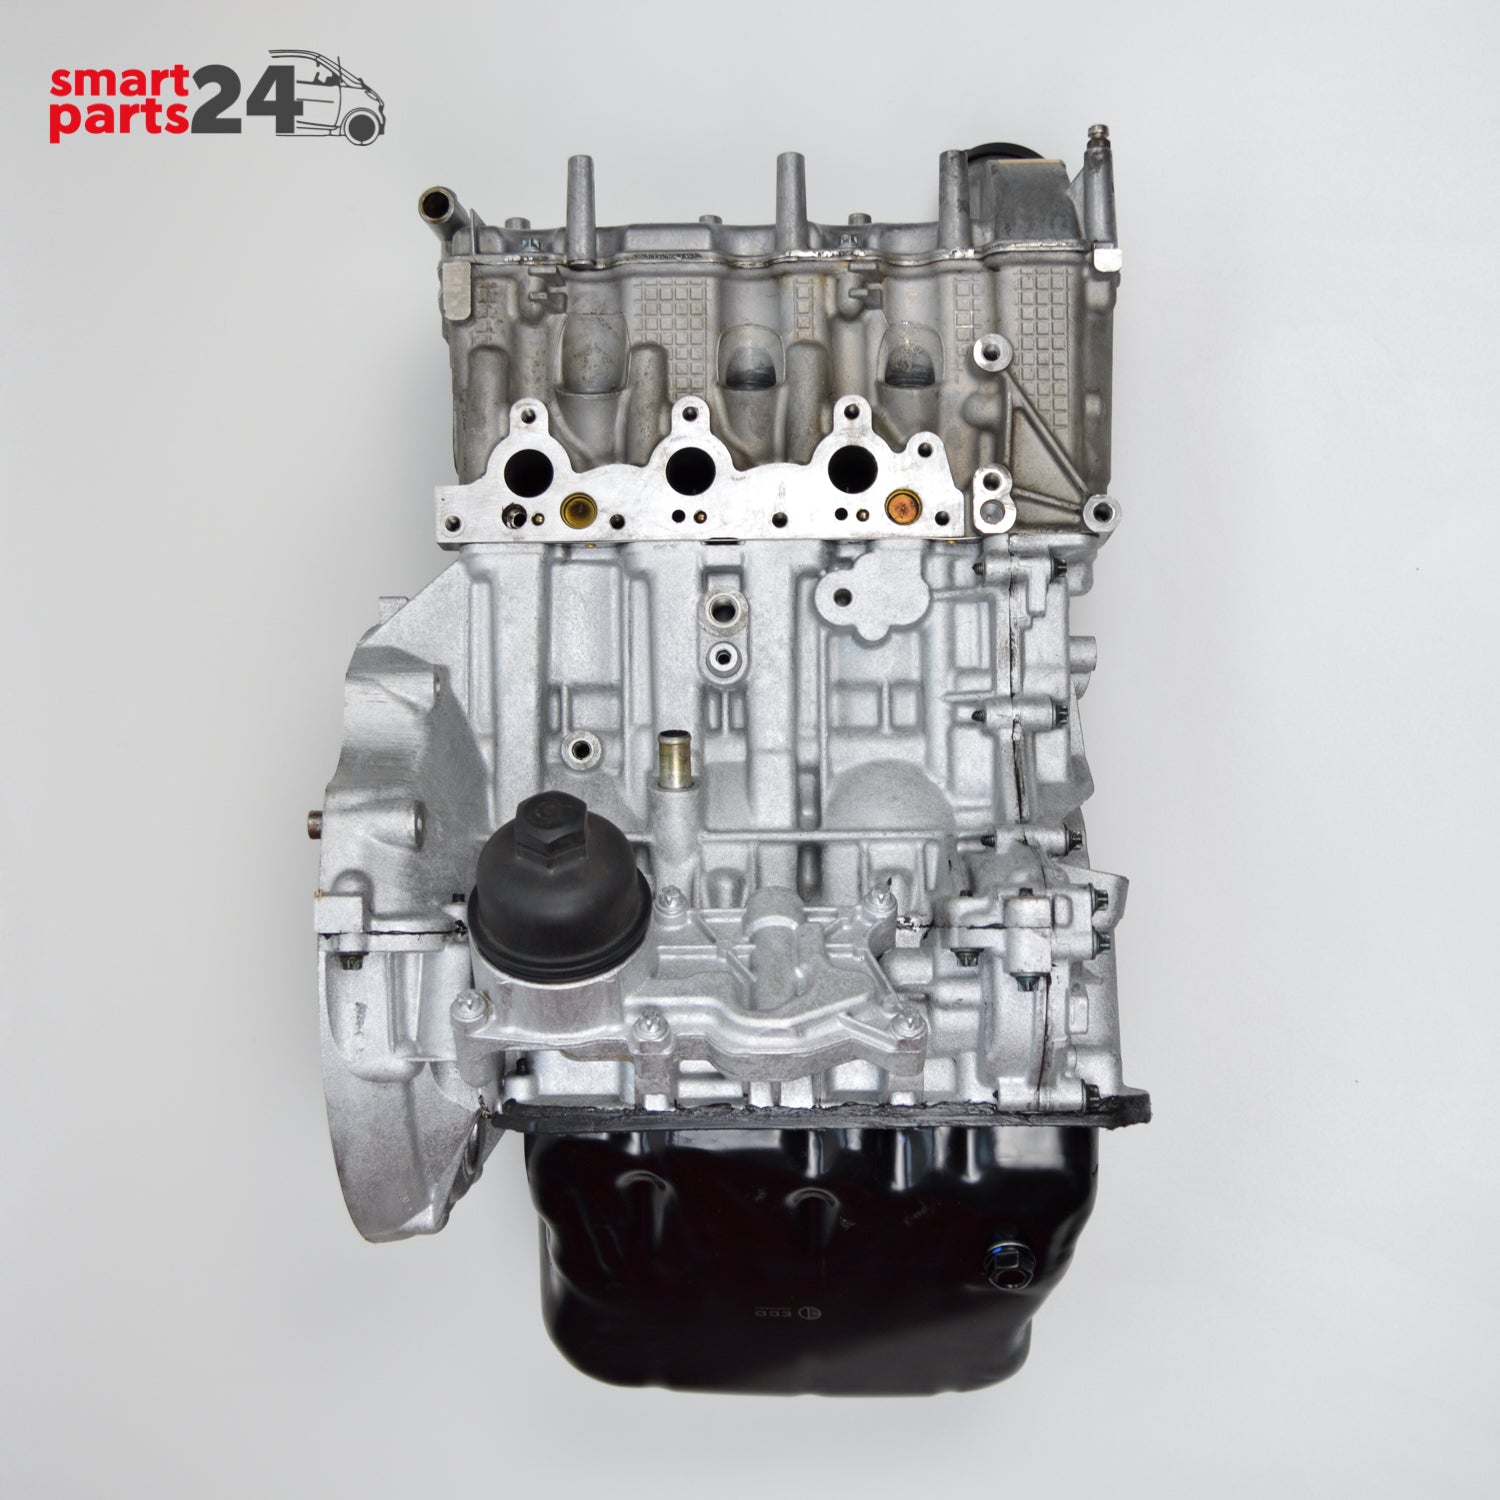 Smart Roadster 452 Austauschmotor AT-Motor 698 ccm 0.7 60 kW A1600101500